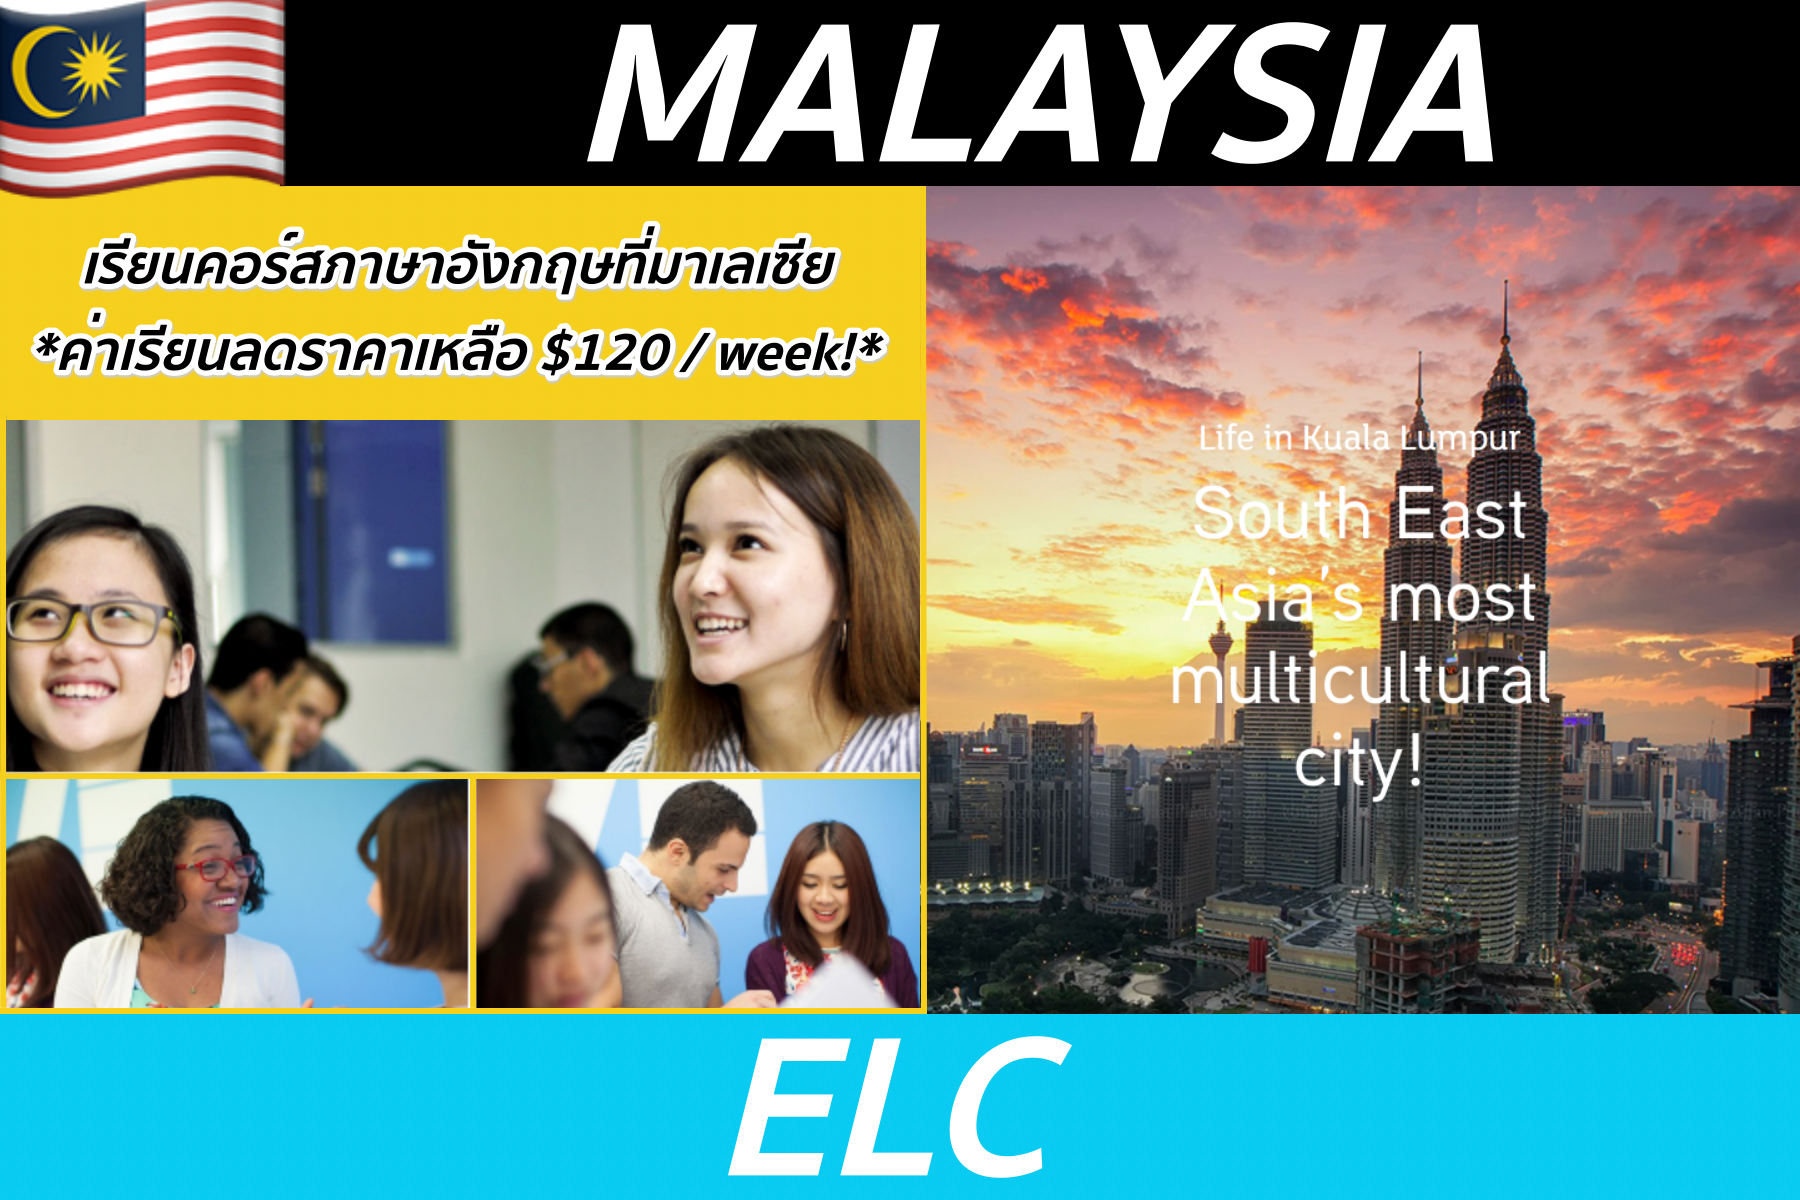 คอร์สภาษา-Summer Program ที่ ELC, Malaysia มาตรฐาน Australia ค่าเรียนราคาประหยัดสุดๆ